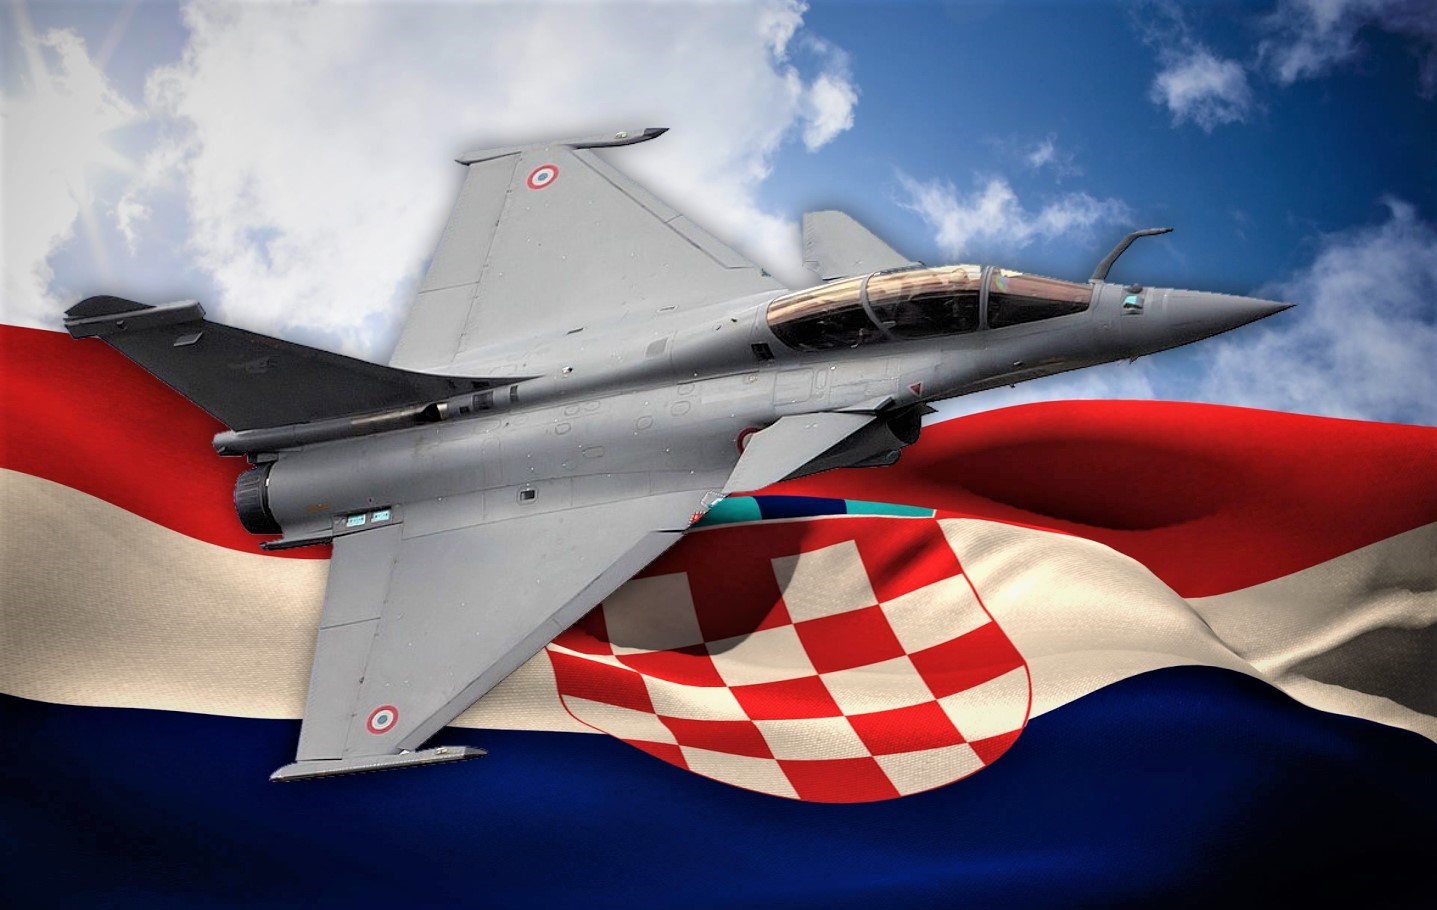 Službena odluka: Hrvatska kupuje Dassault Rafale F3-R za 999 milijuna eura,  na rate - Avijacija @ Bug.hr